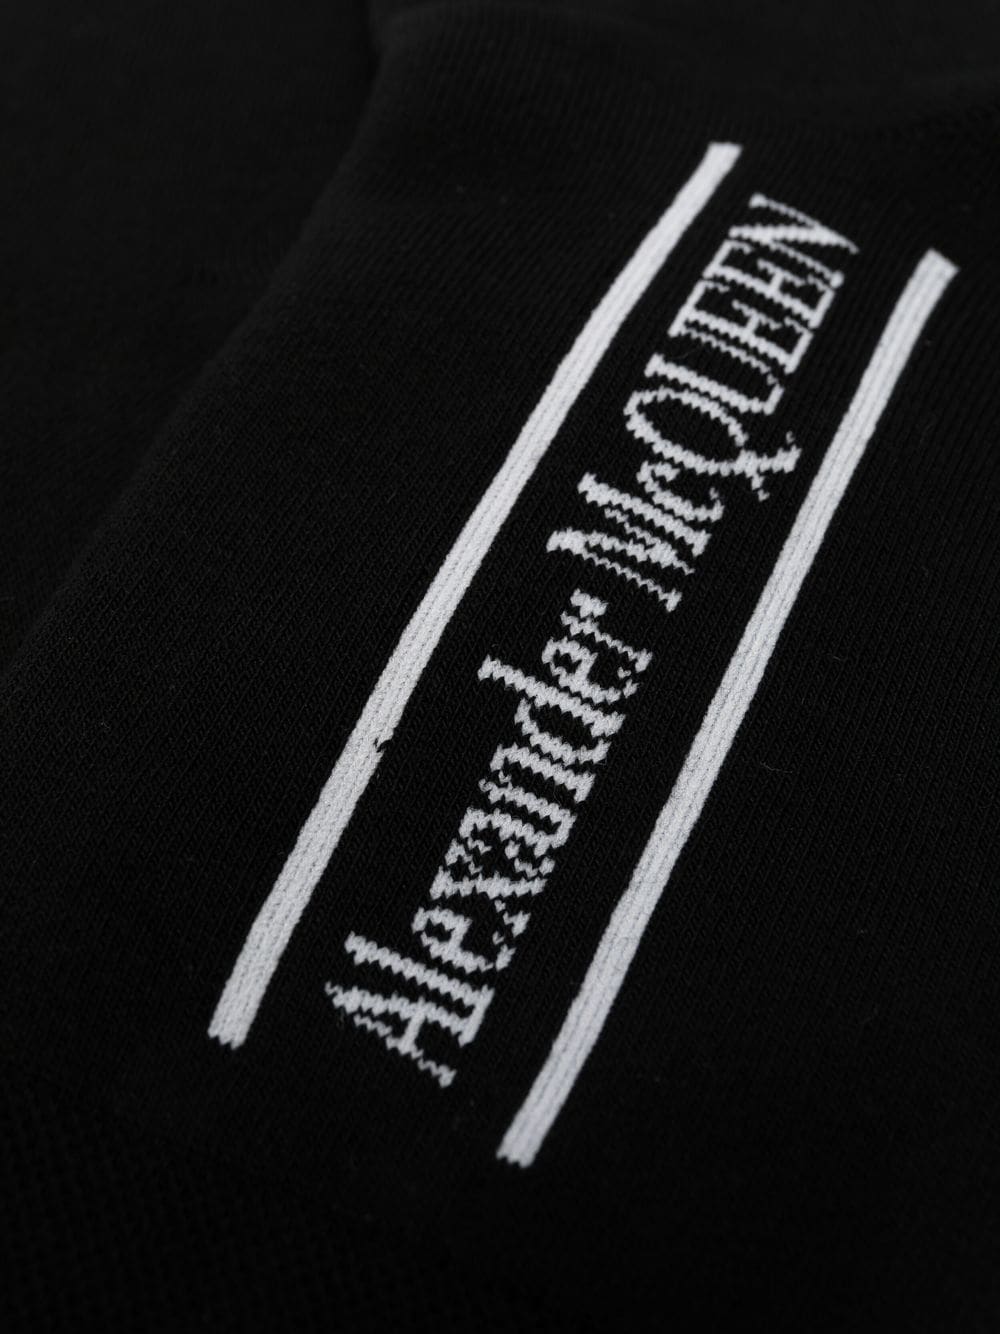 Alexander McQueen Intarsia enkelsokken - Zwart